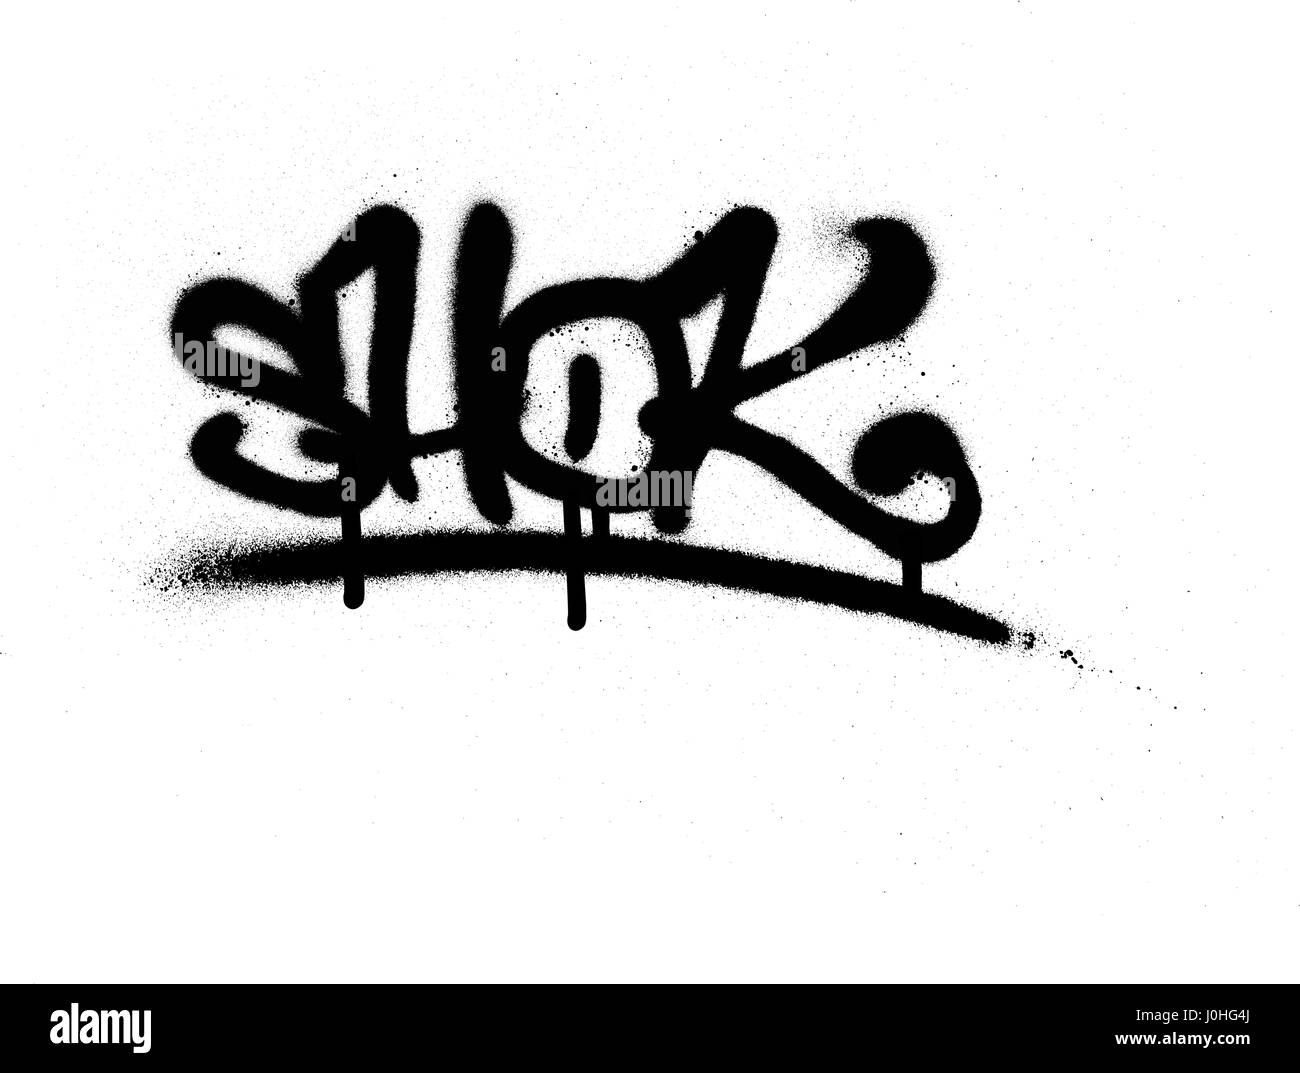 Graffiti Tag mit Leck schwarz auf weiß gespritzt Stock ...